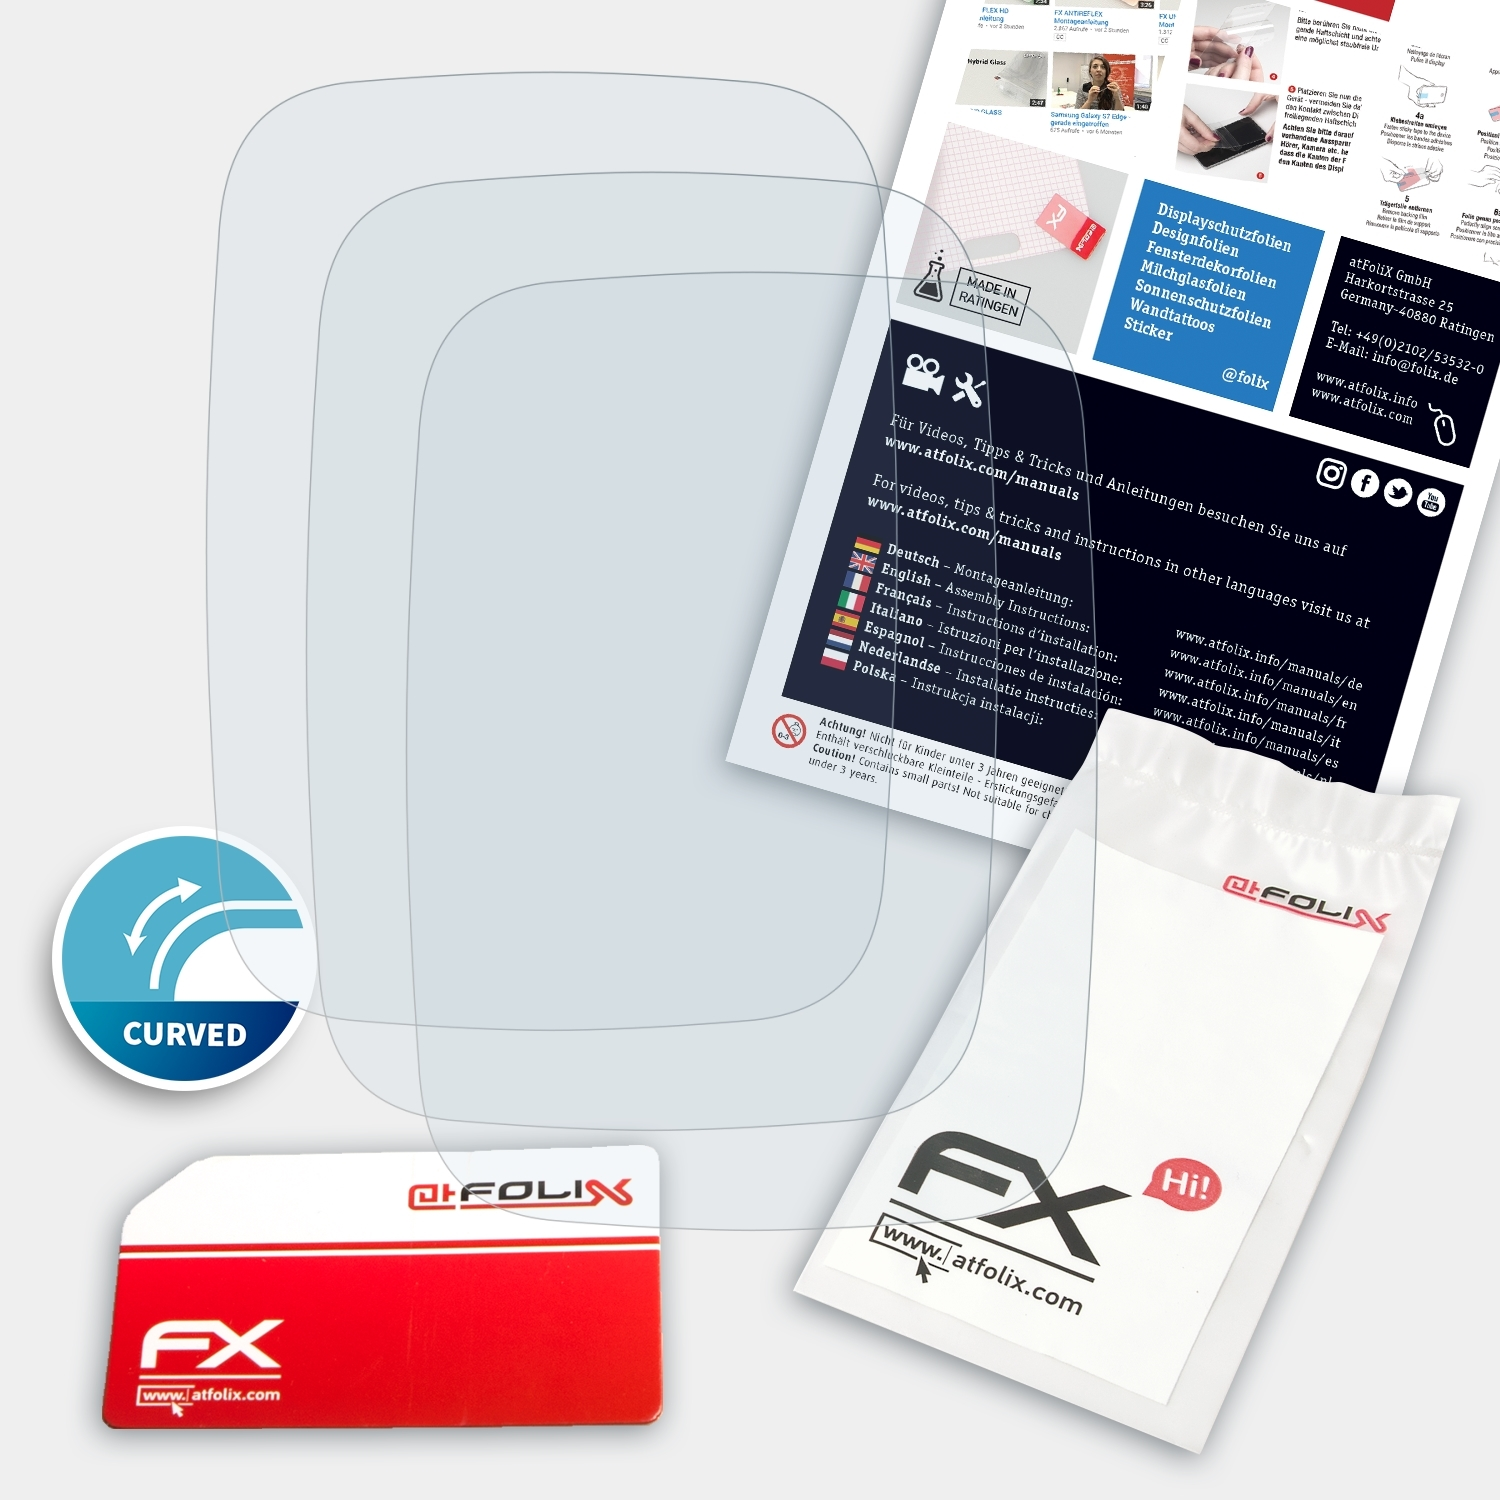 Zero FX-ActiFleX One) Displayschutz(für ATFOLIX Swatch 3x Touch